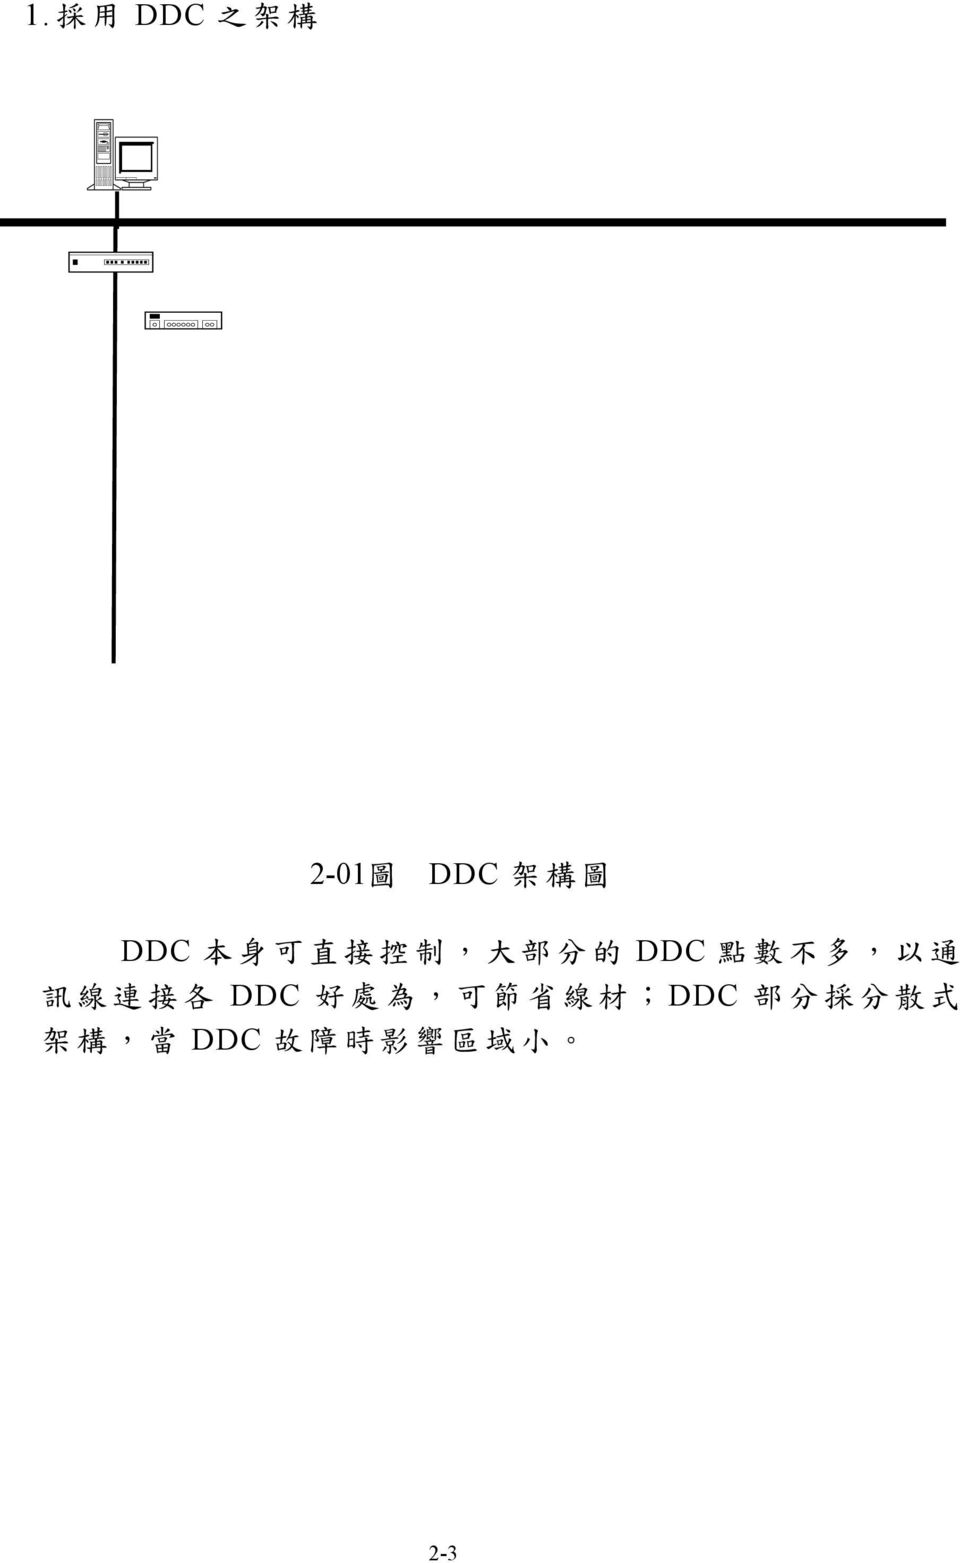 DDC (I/O) DDC (I/O) 485 BACNet DDC (I/O) DDC (I/O)